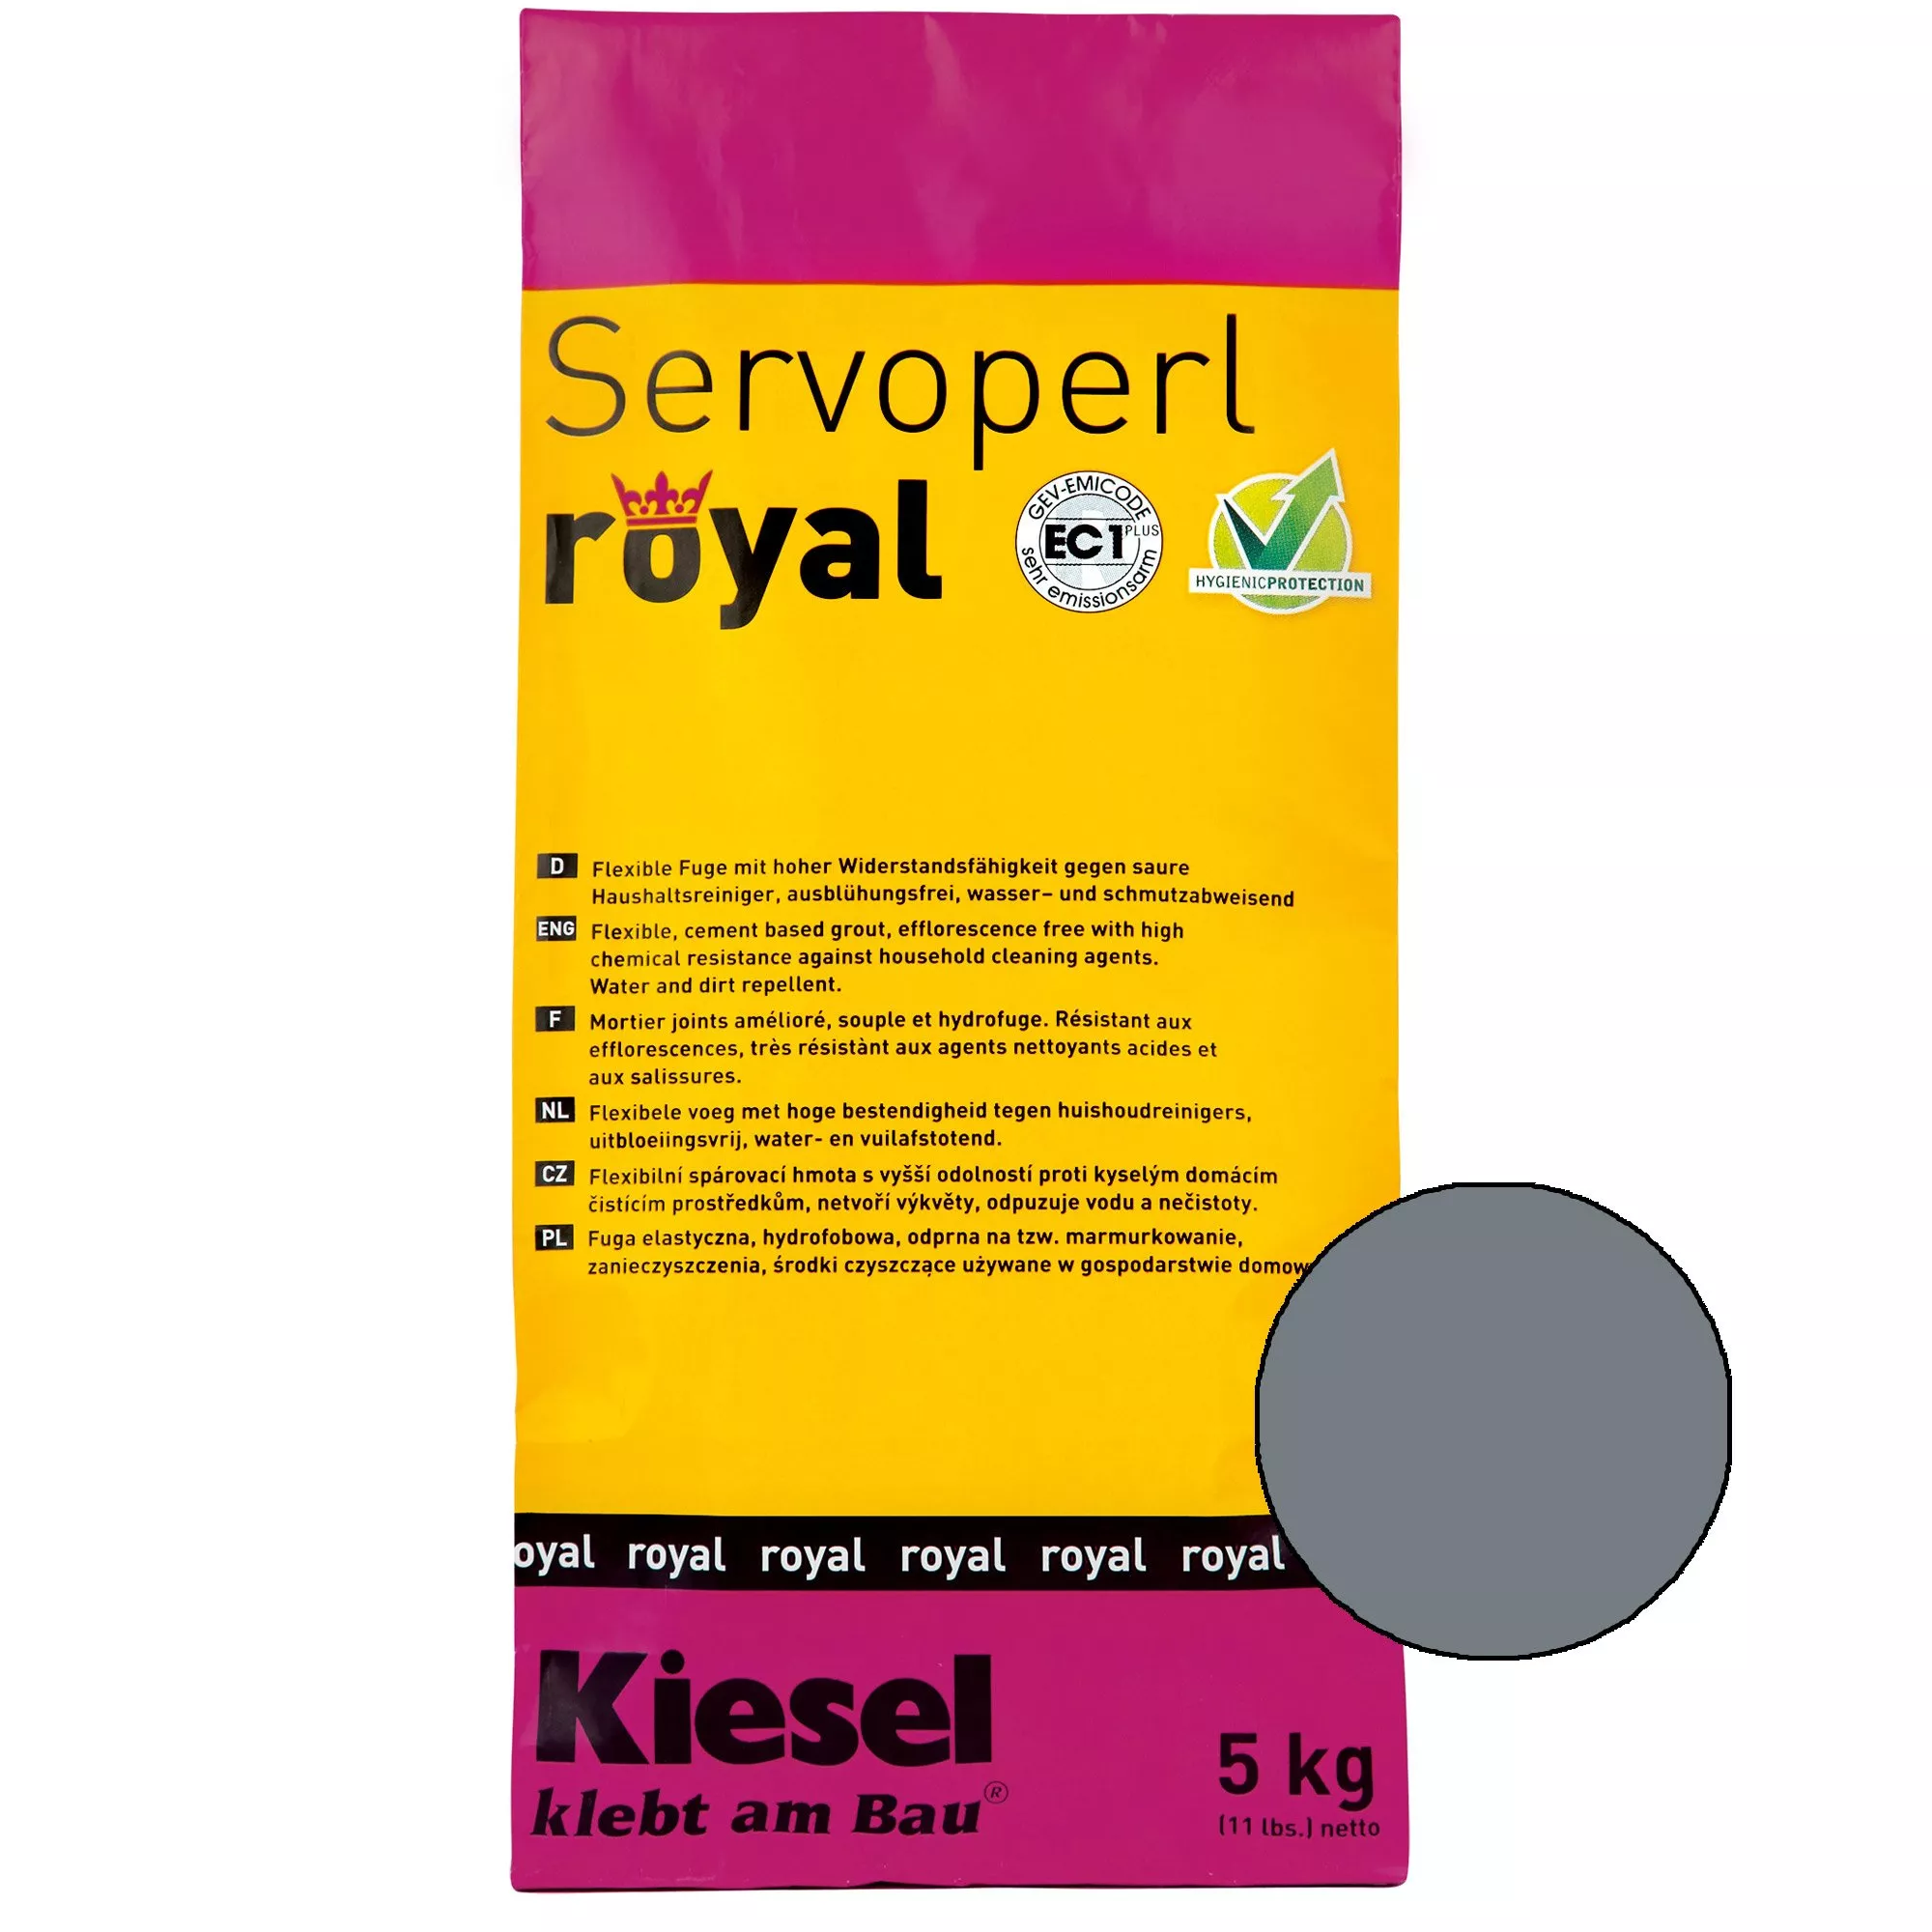 Kiesel Servoperl royal - Flexible, wasser- und schmutzabweisende Fuge (5KG Basalt)